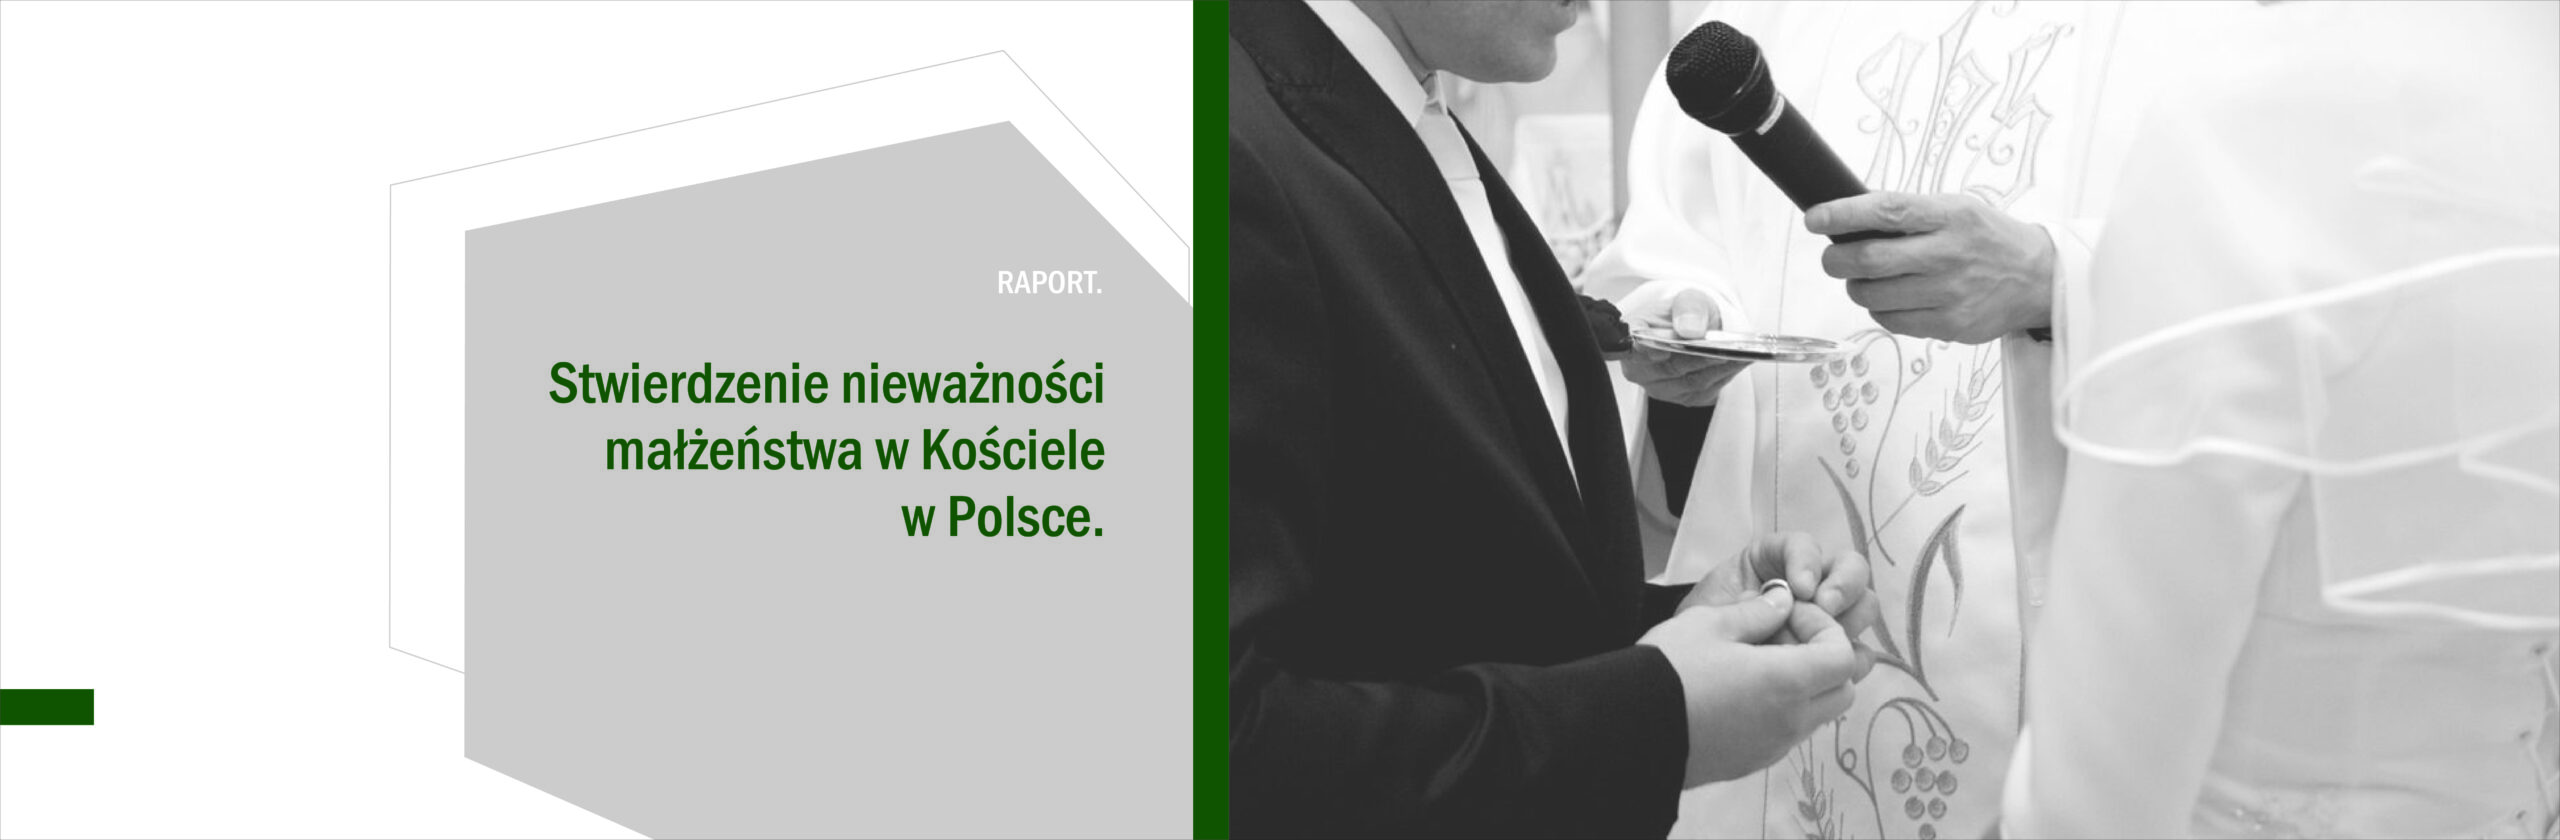 Grafika "Raport. Stwierdzenie nieważności małżeństwa w Kościele w Polsce"